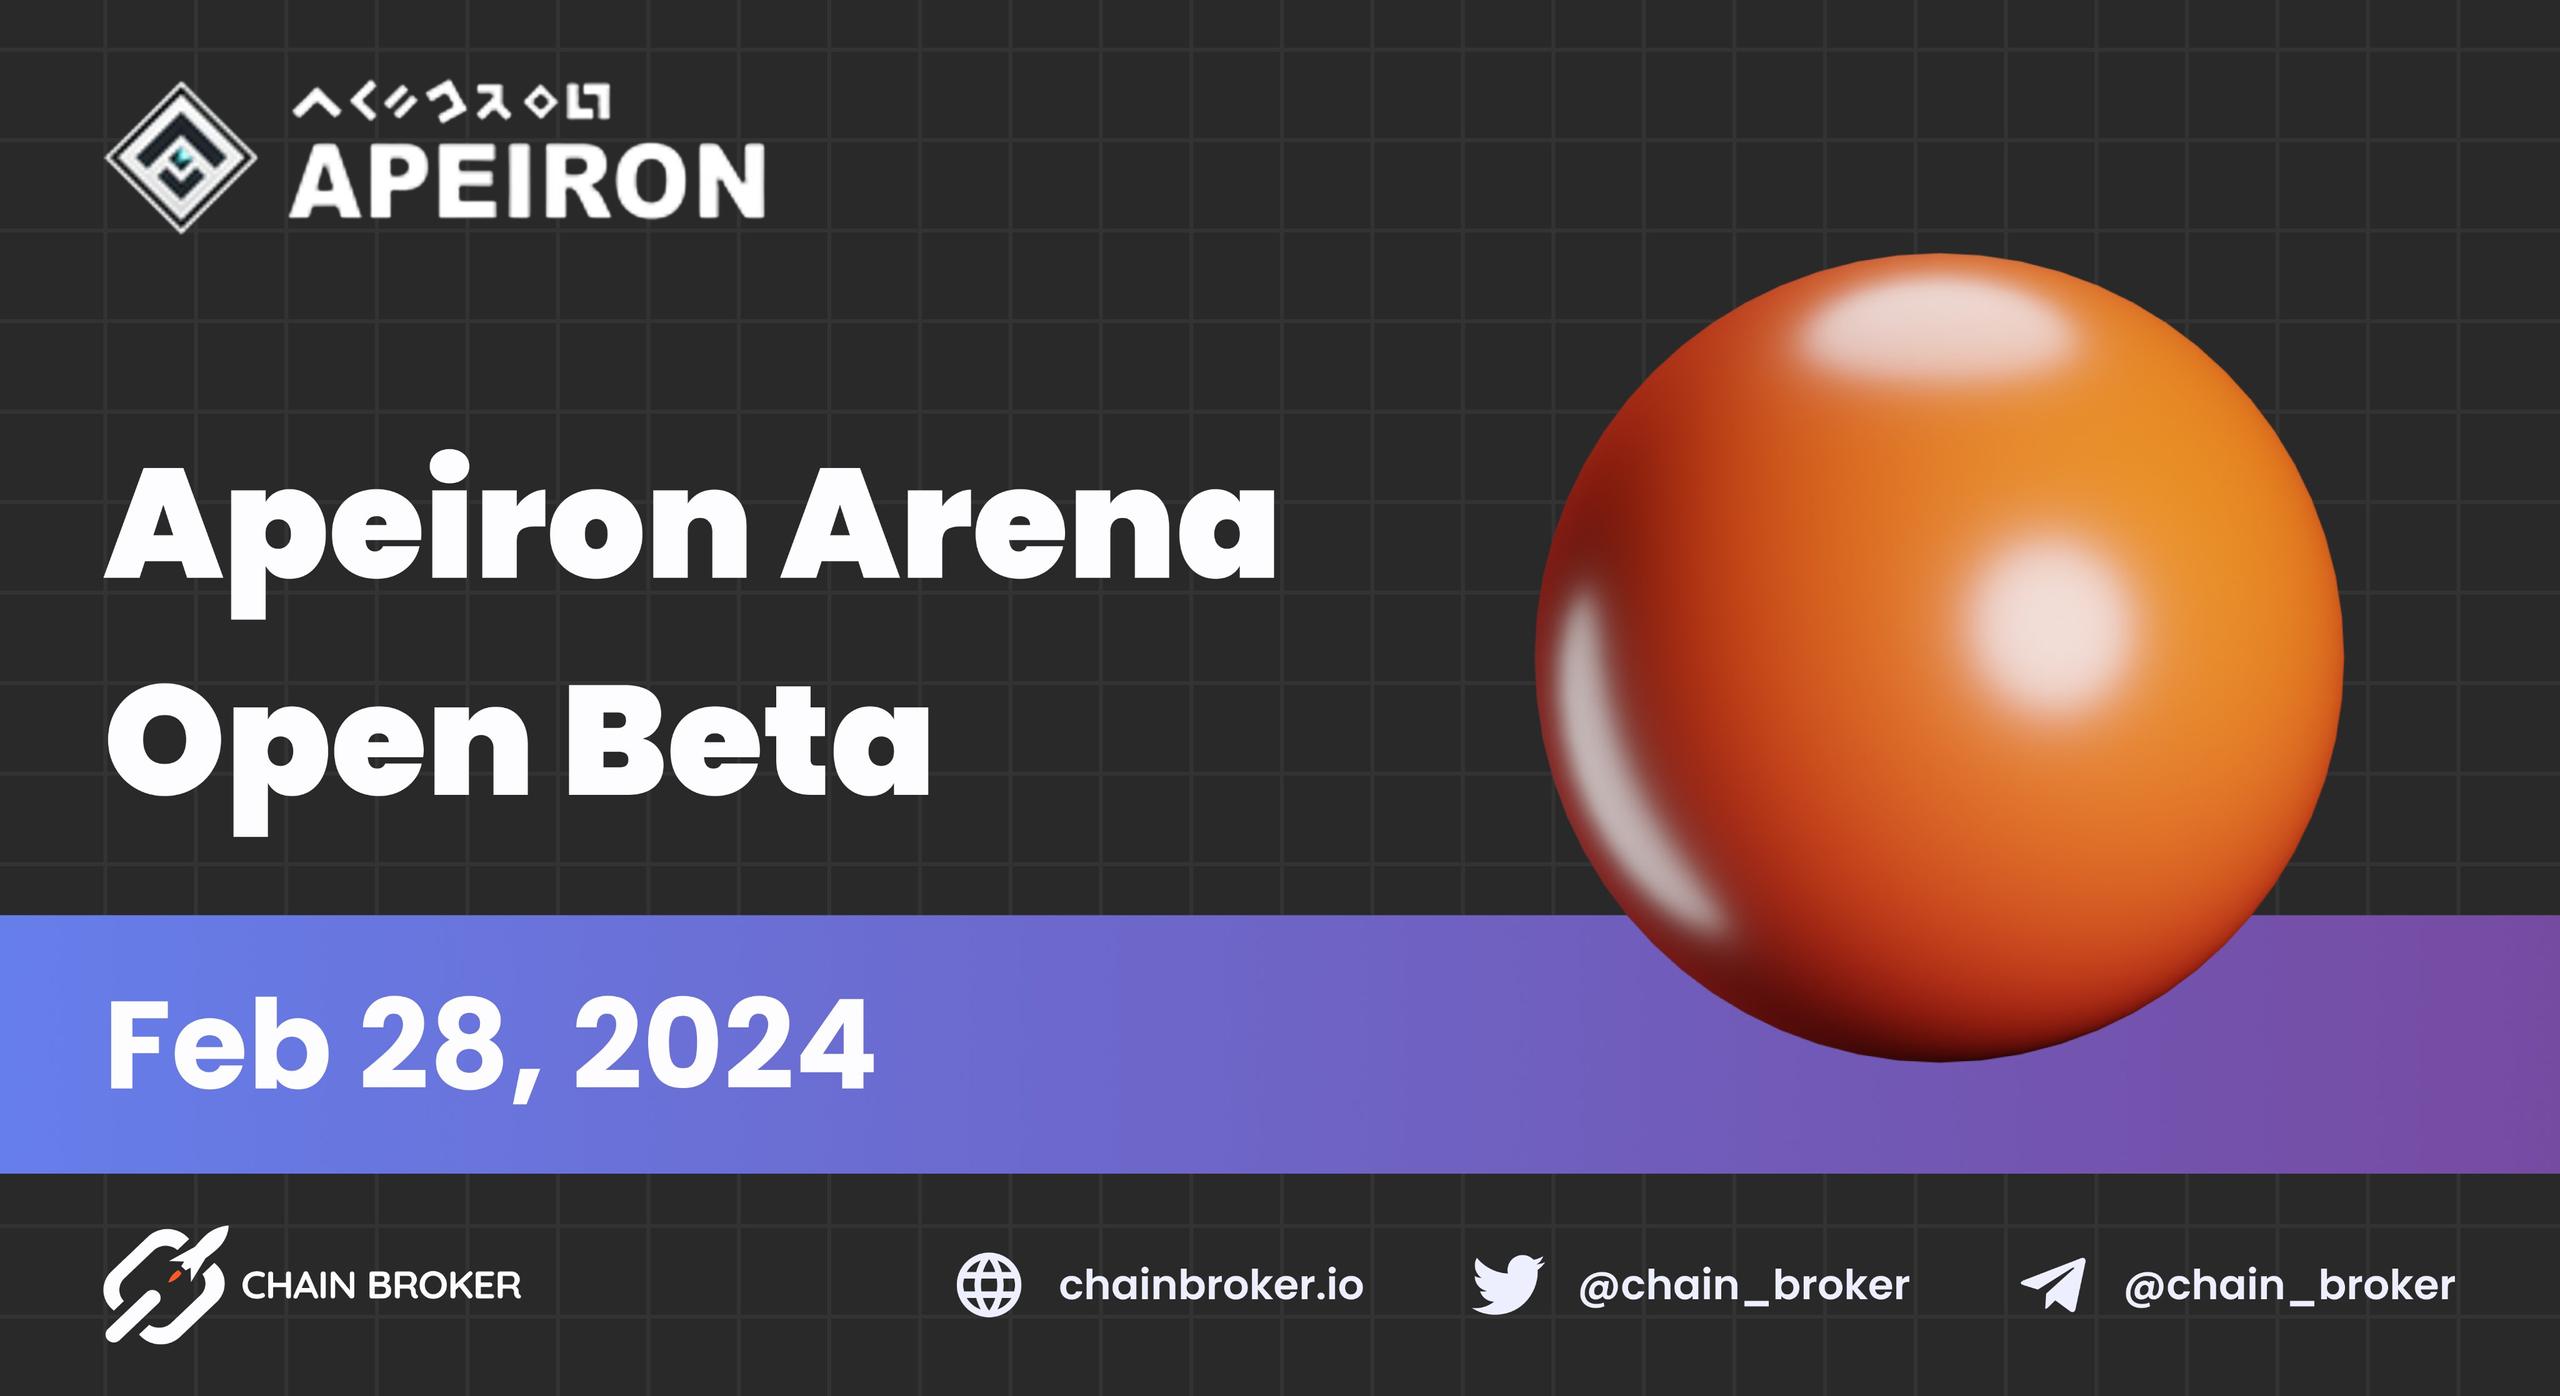 Apeiron Arena enters Open Beta